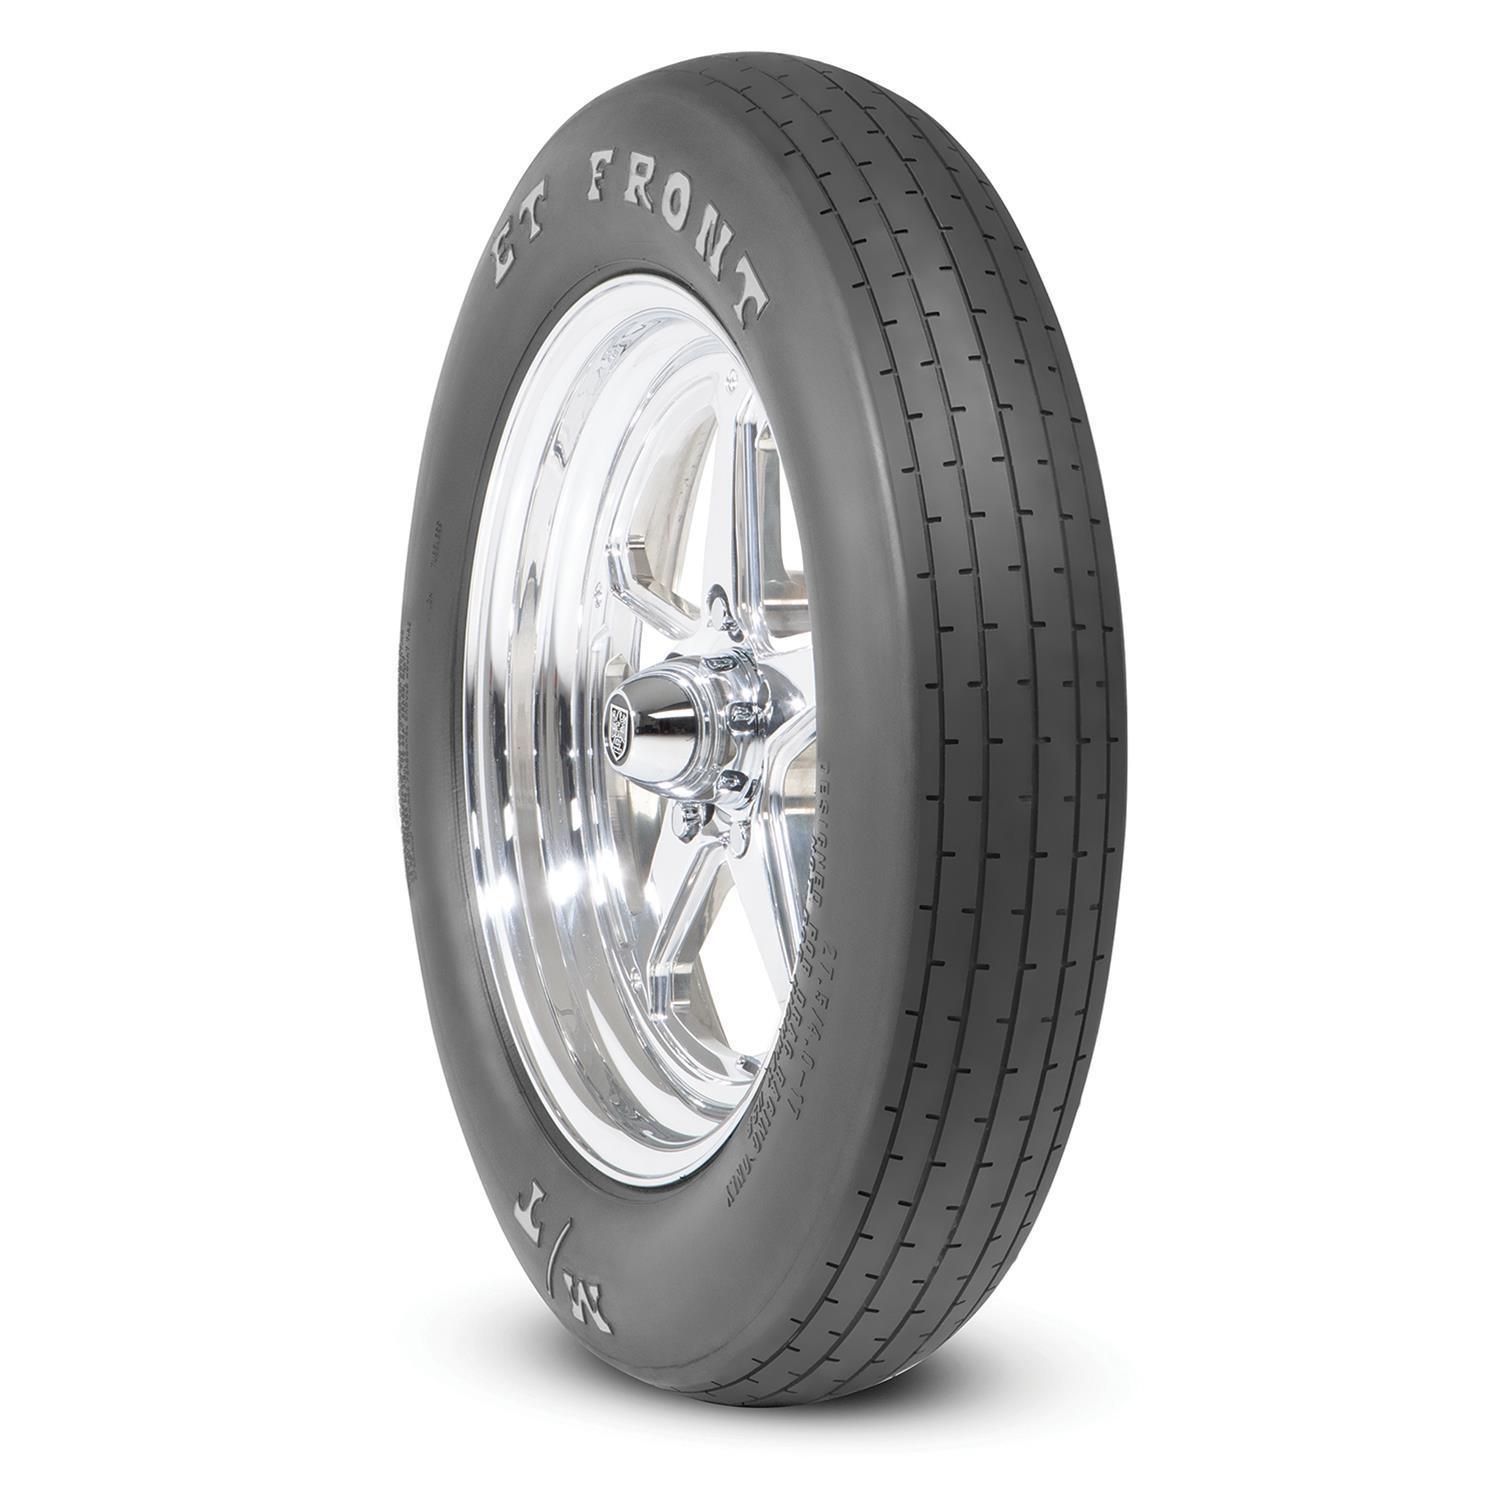 26x4-17 ET Drag Front Tire - Burlile Performance Products